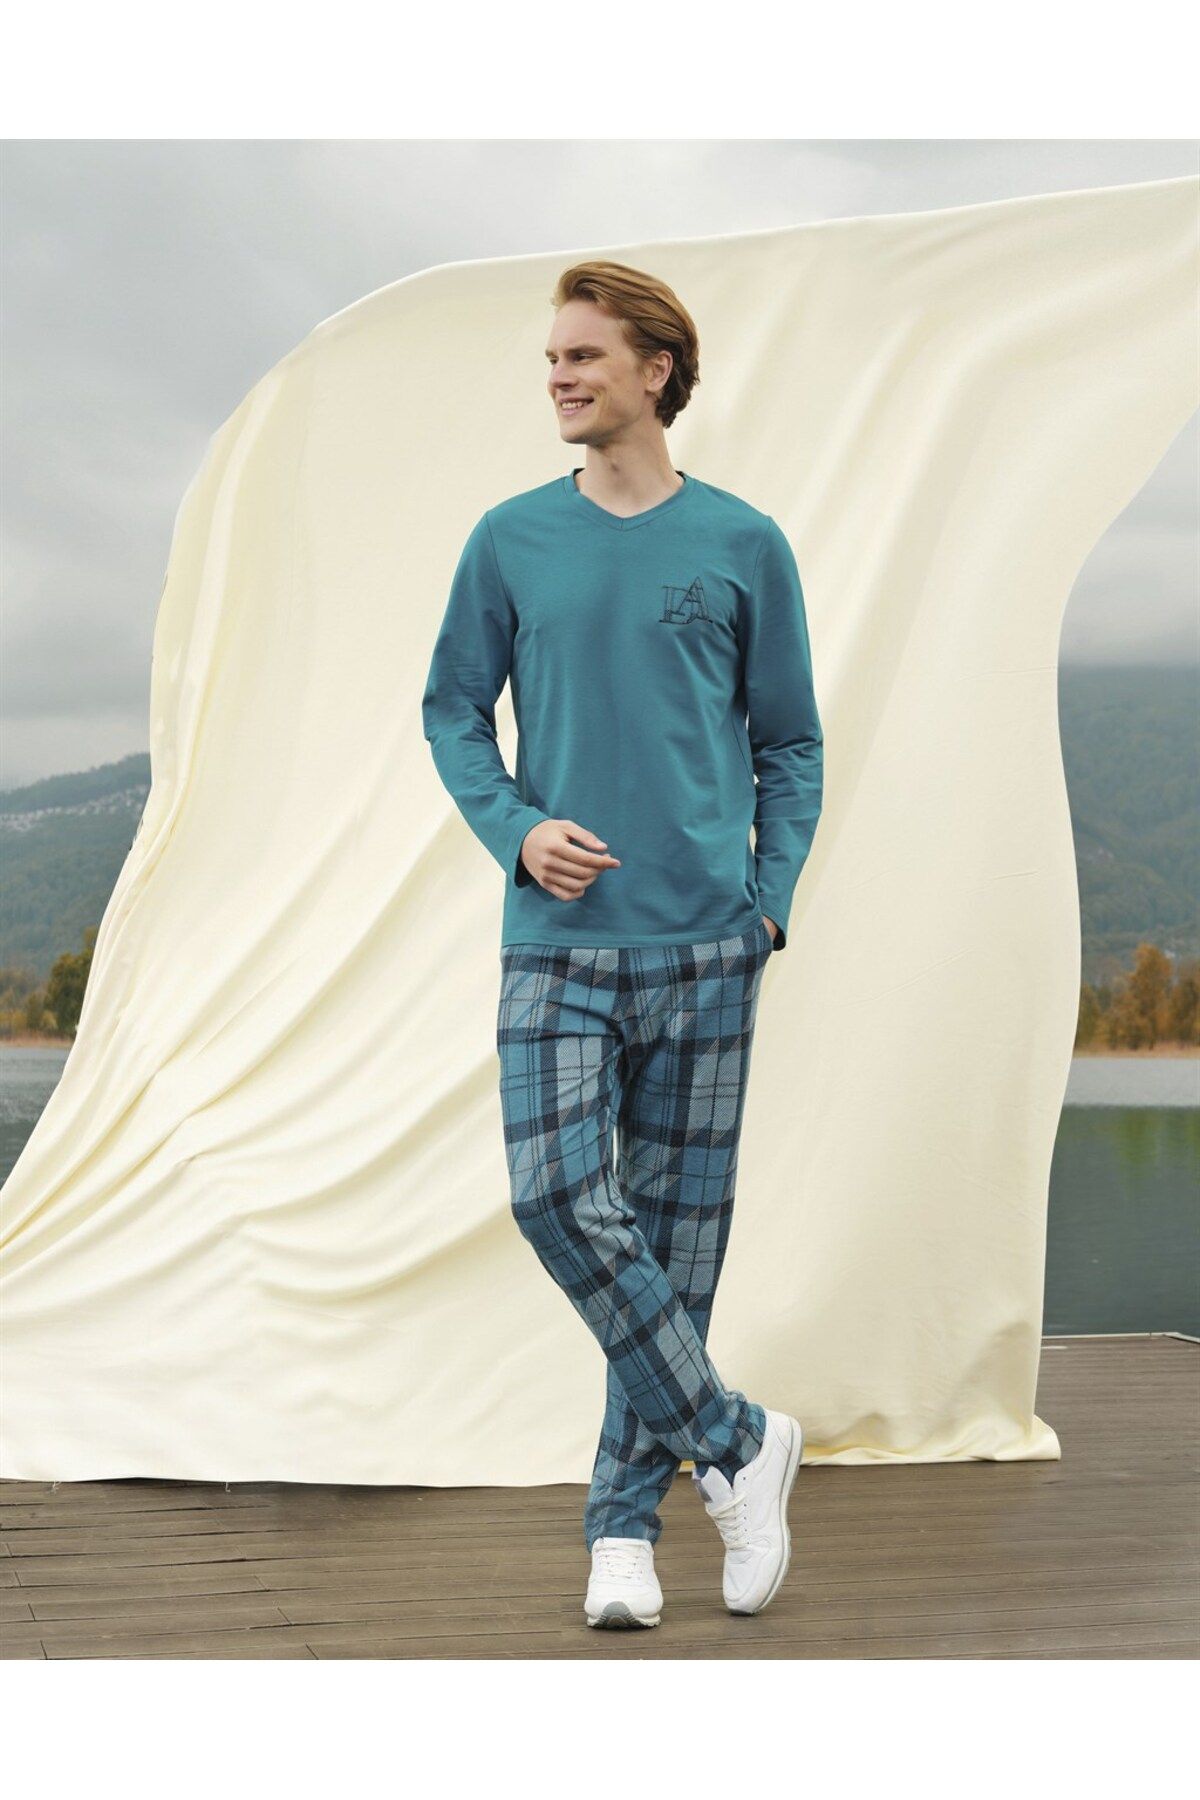 Doreanse Erkek Turkuaz Kareli Marka Baskılı Uzun Kol T-shirt Pijama Takımı 4683